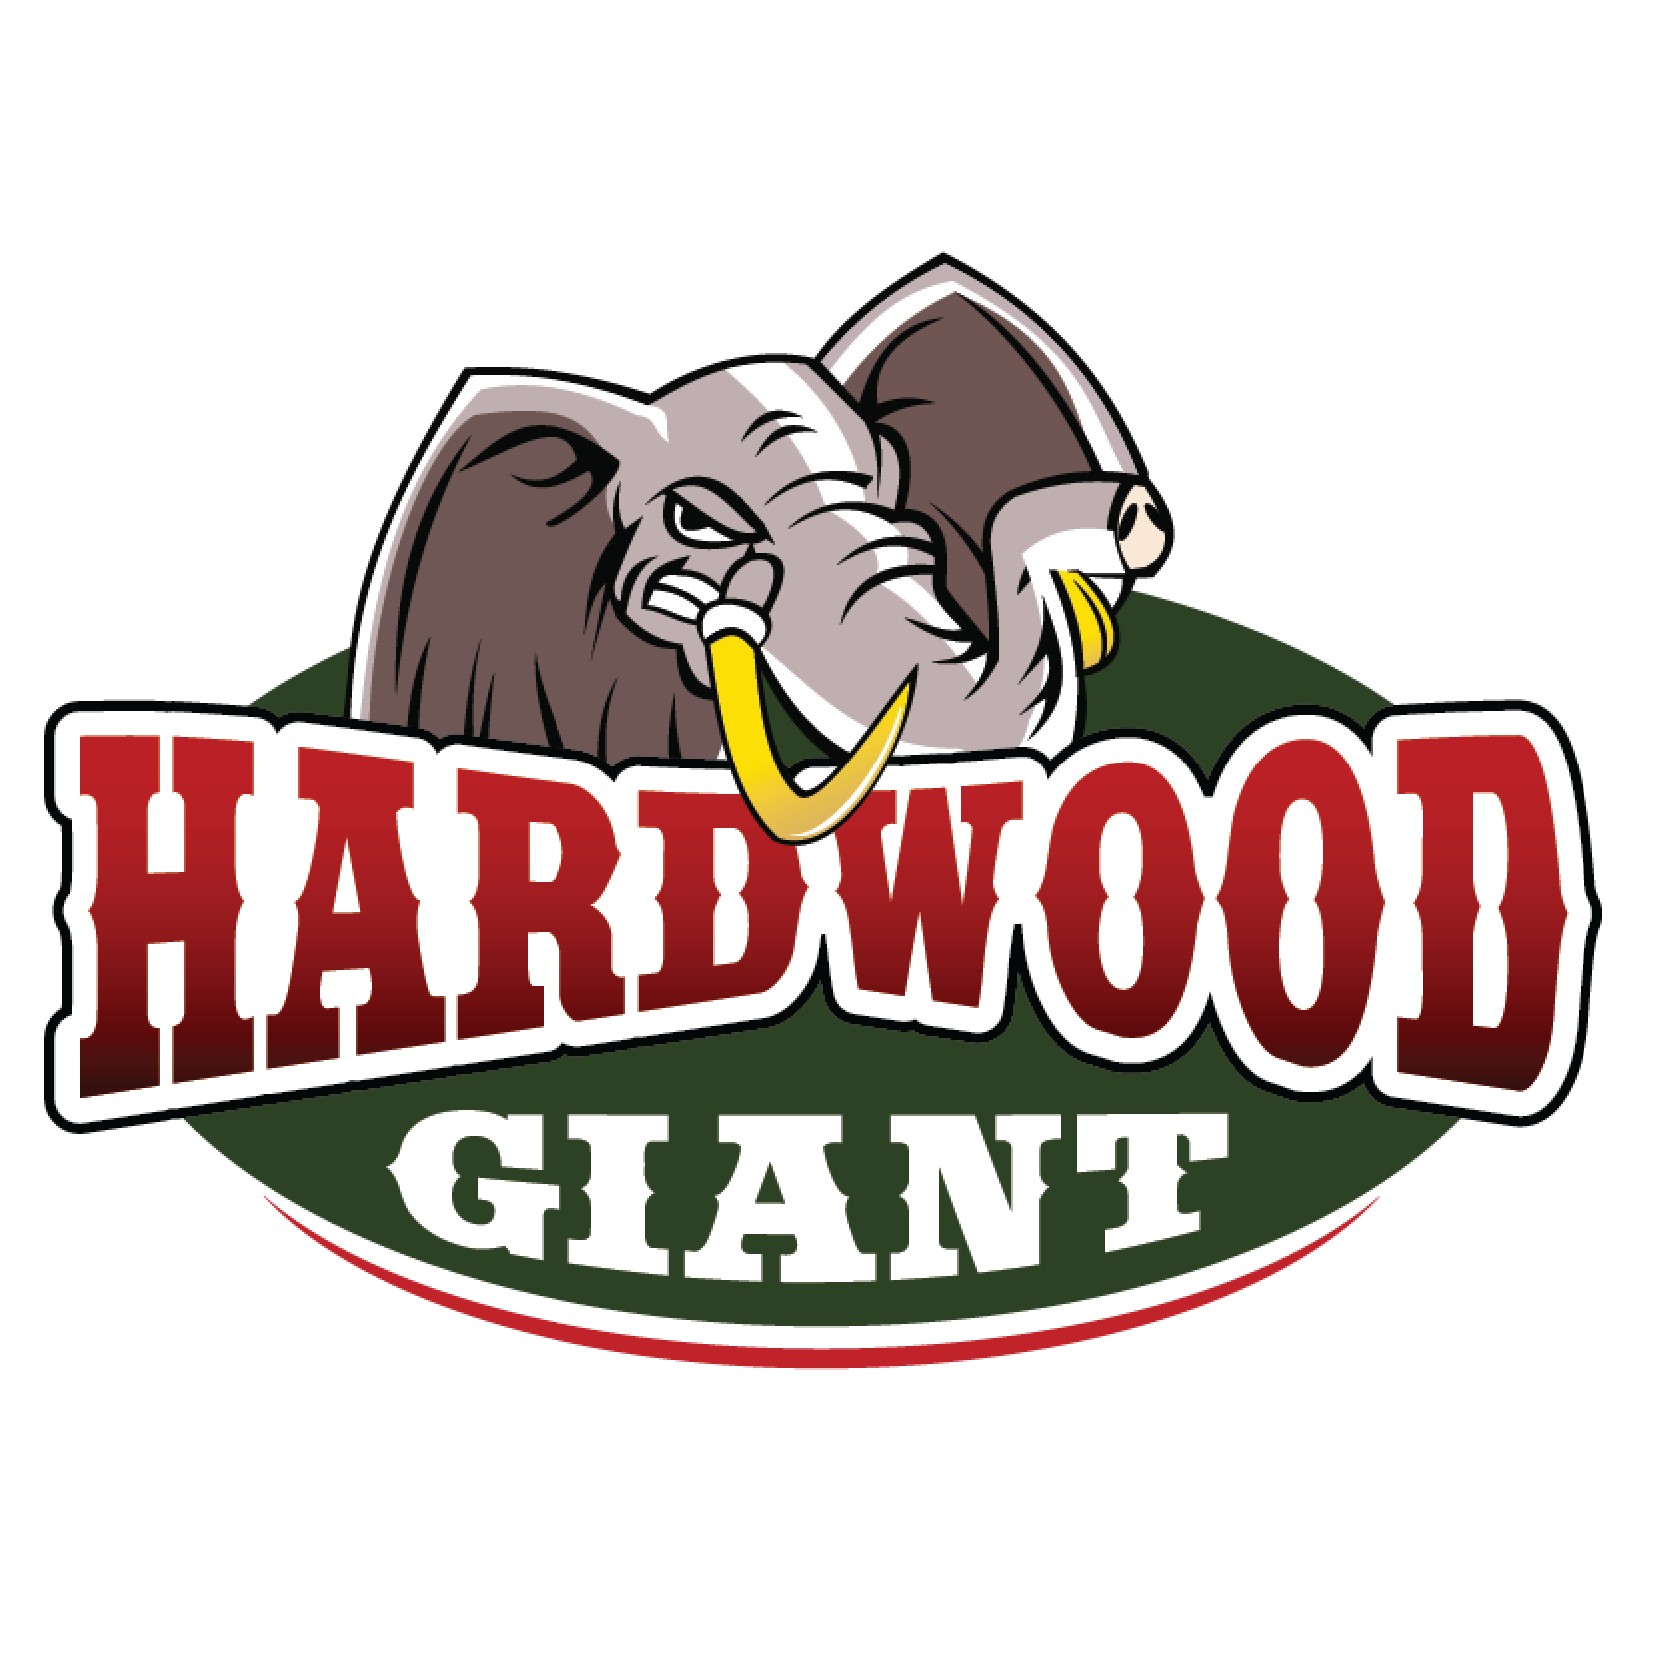 View Hardwood Giant Flyer online